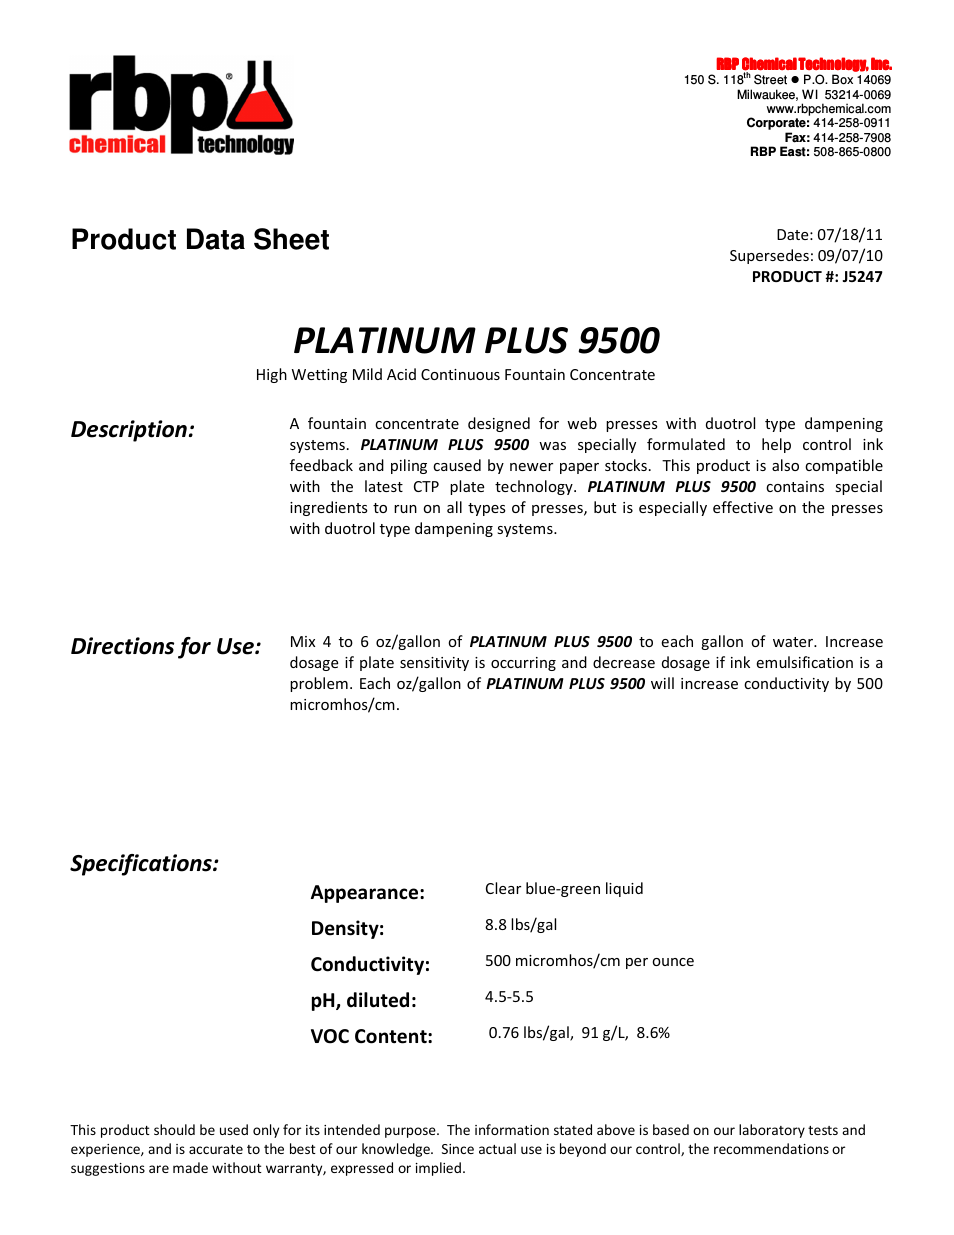 J5247 PLATINUM PLUS 9500